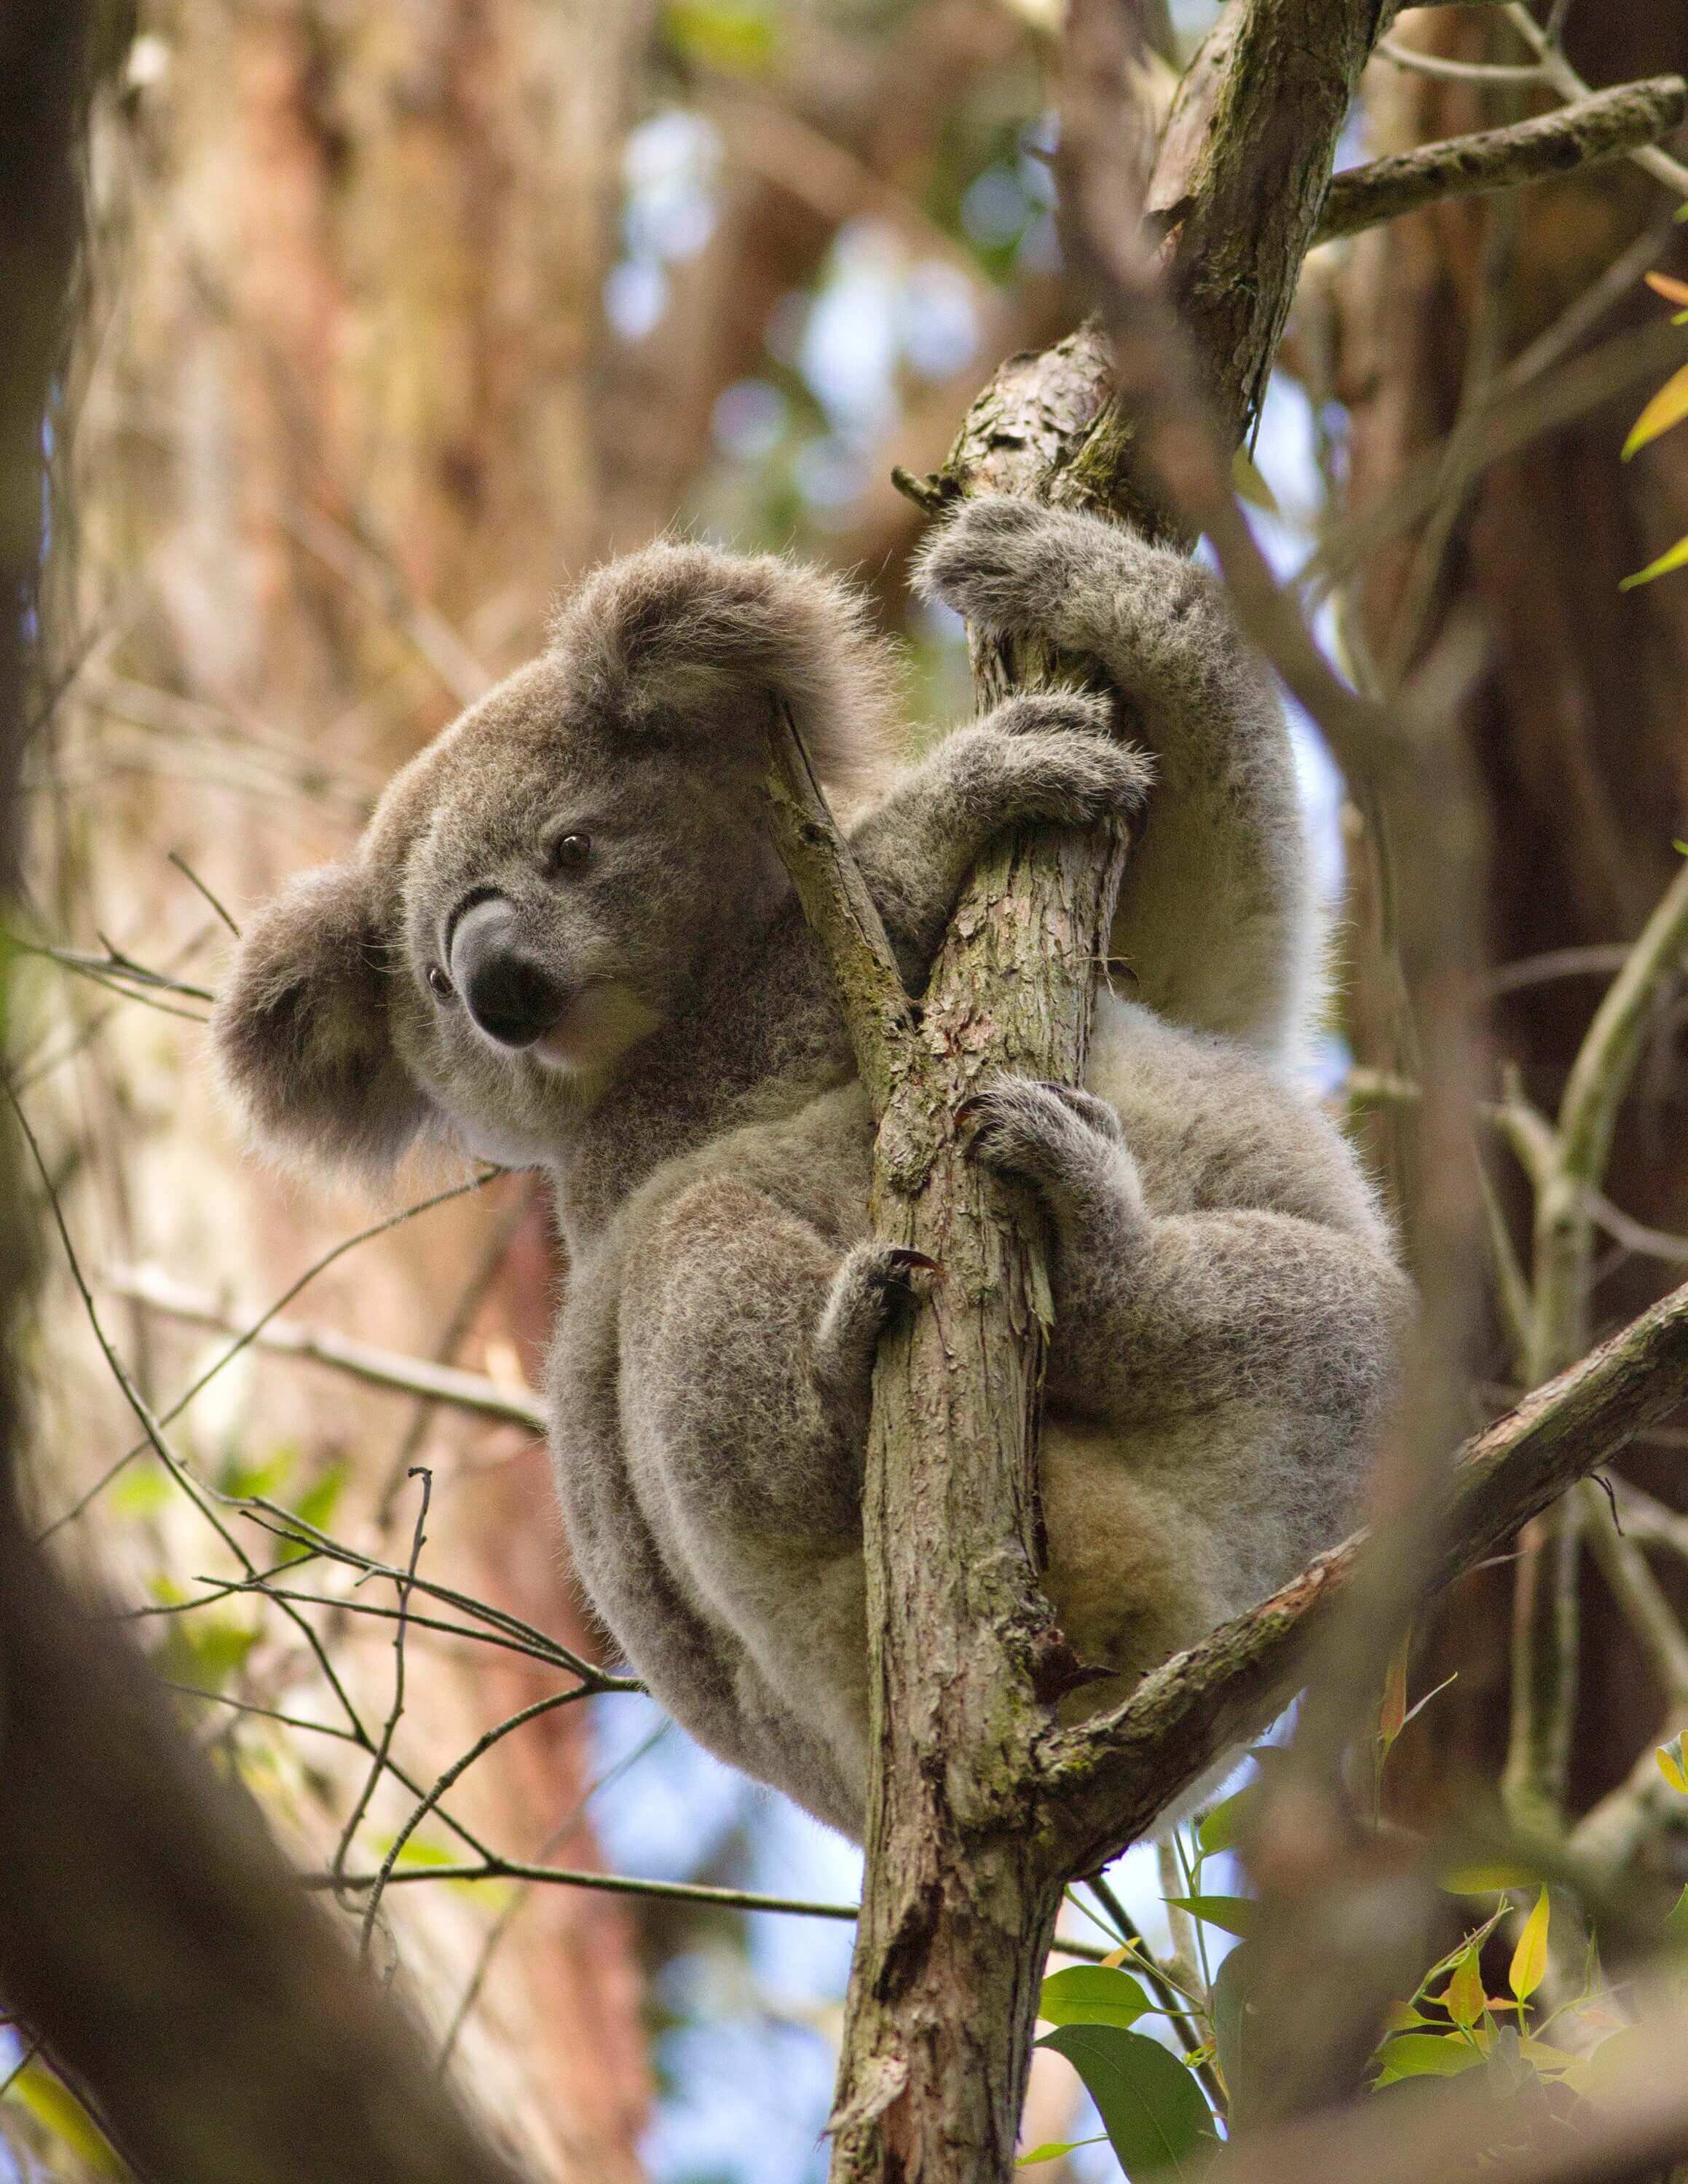 A koala in a tree